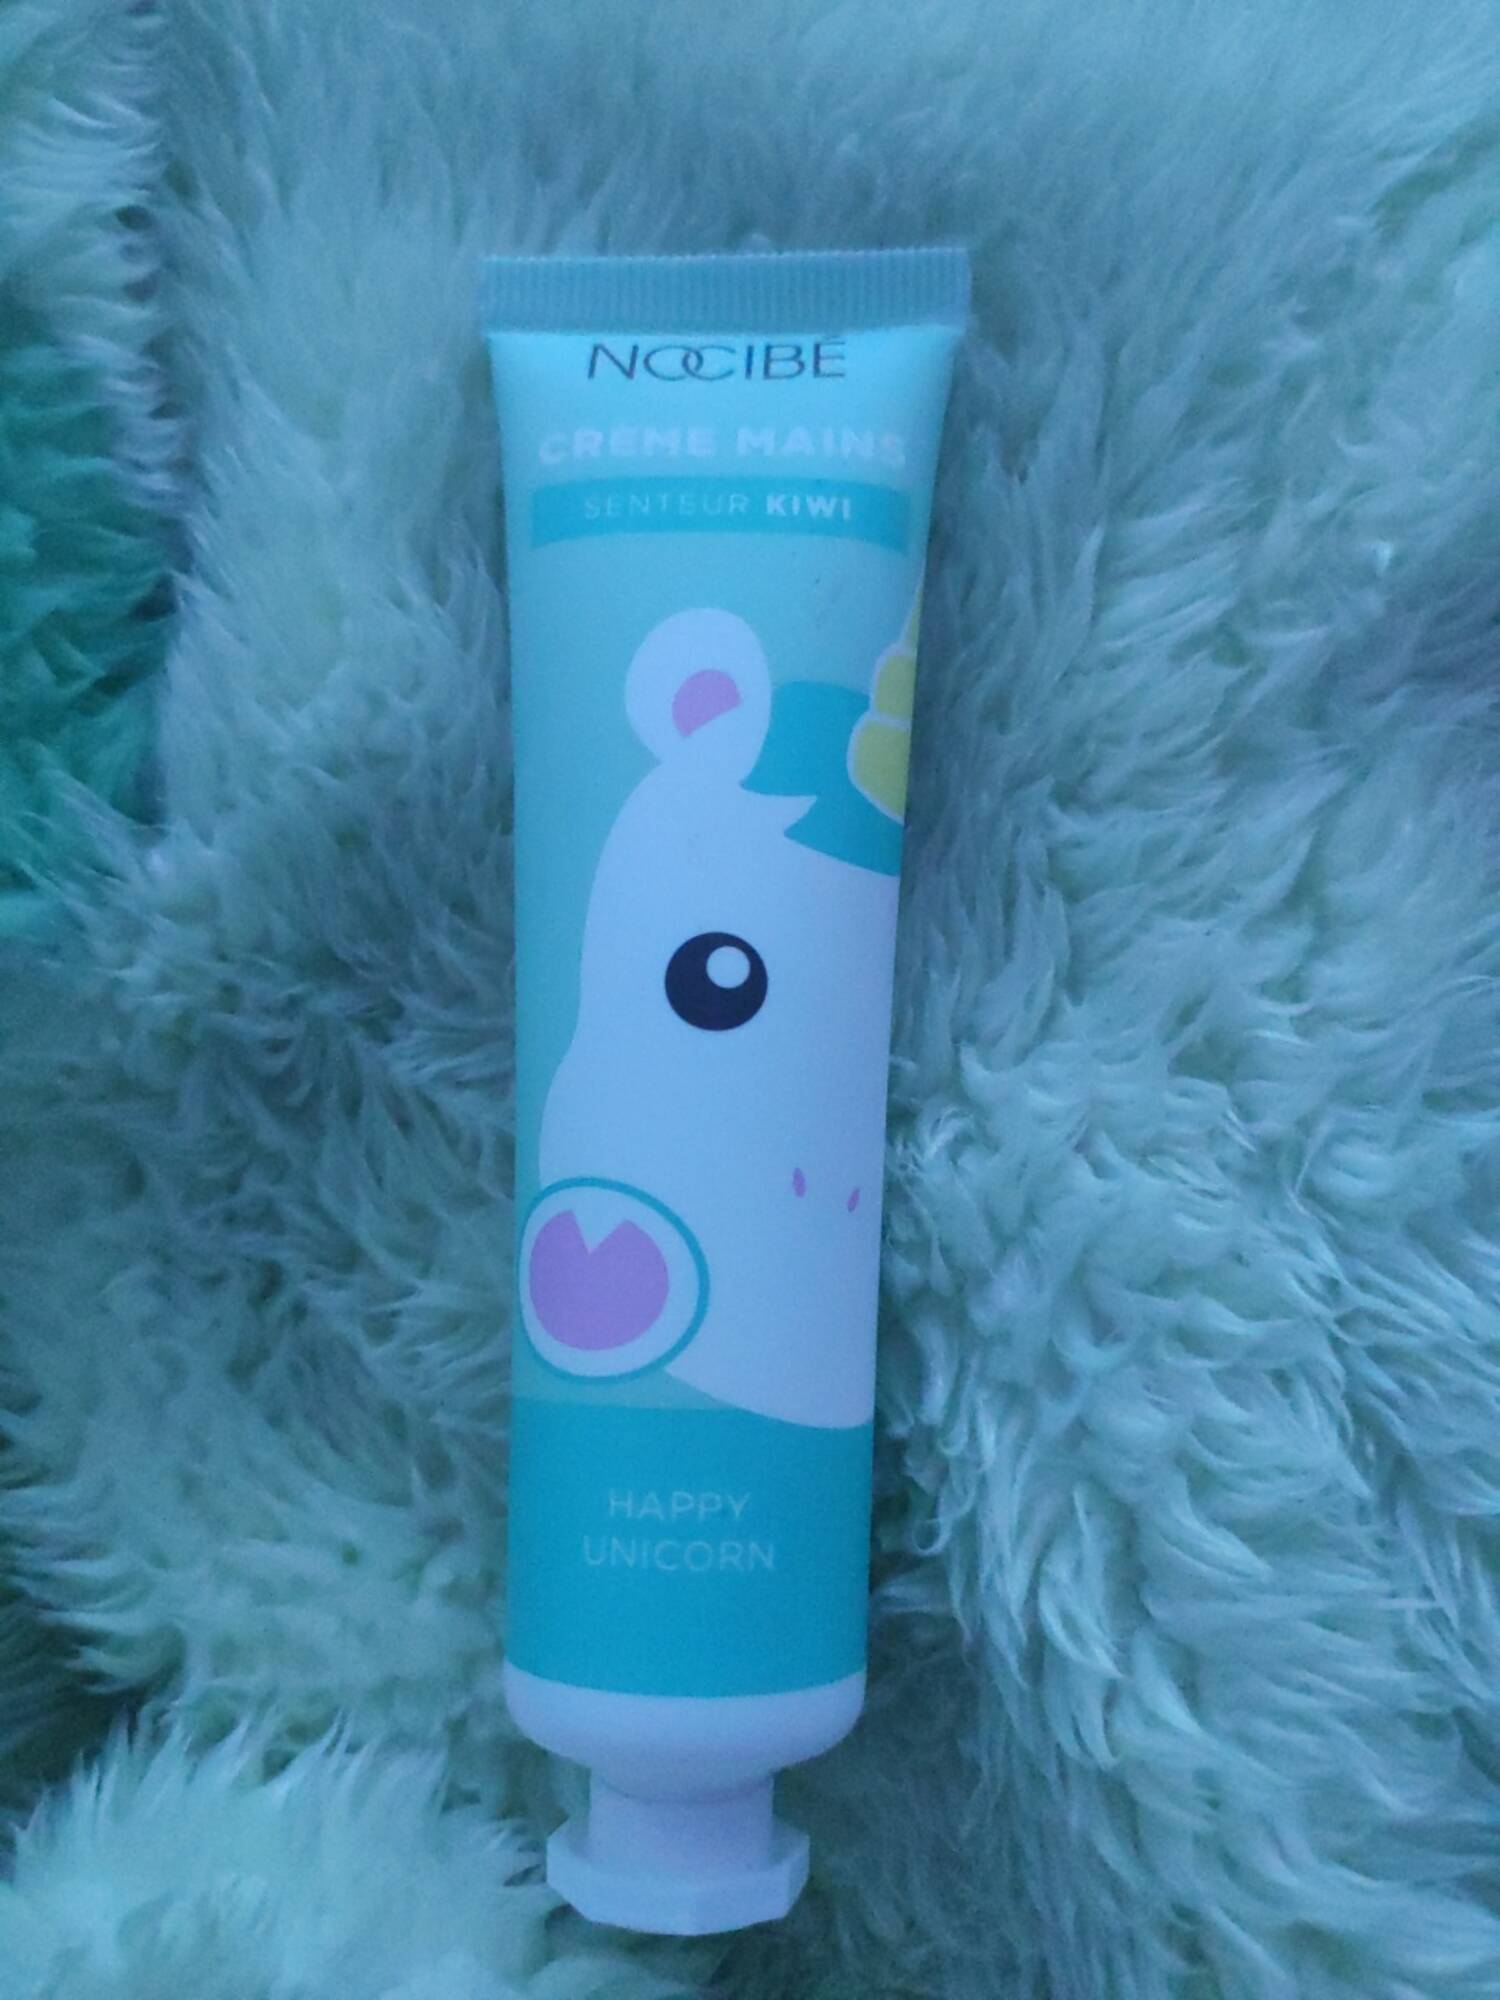 NOCIBÉ - Happy unicorn - Crème mains senteur kiwi